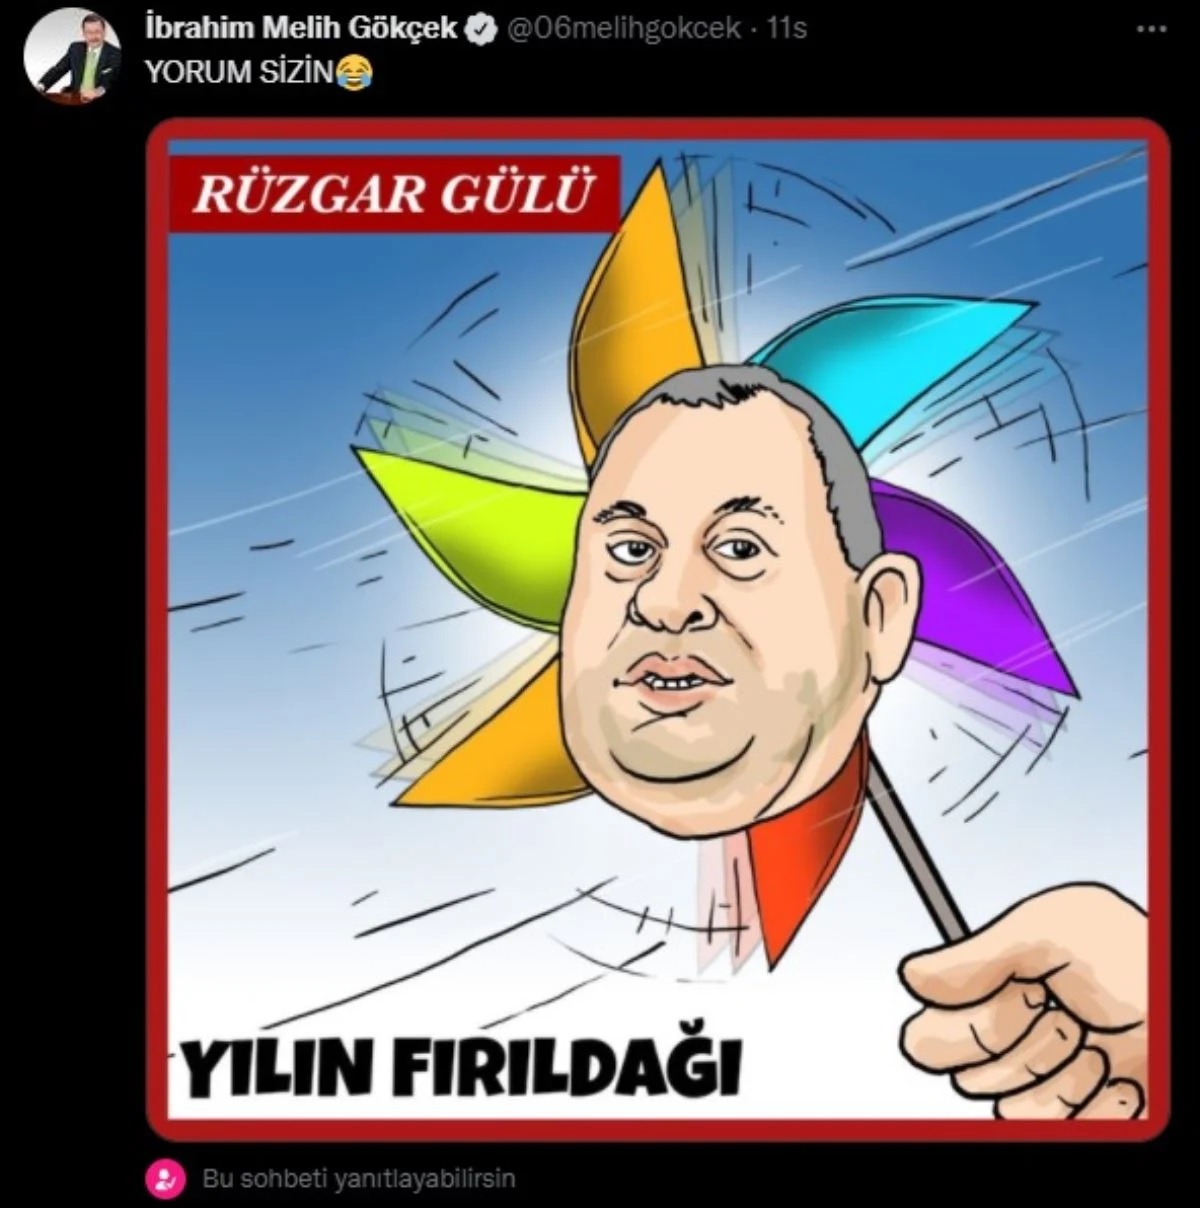 DP'li Enginyurt'tan Melih Gökçek'e cevap: Yedek parti kurup Erdoğan'a tuzak kurmuş